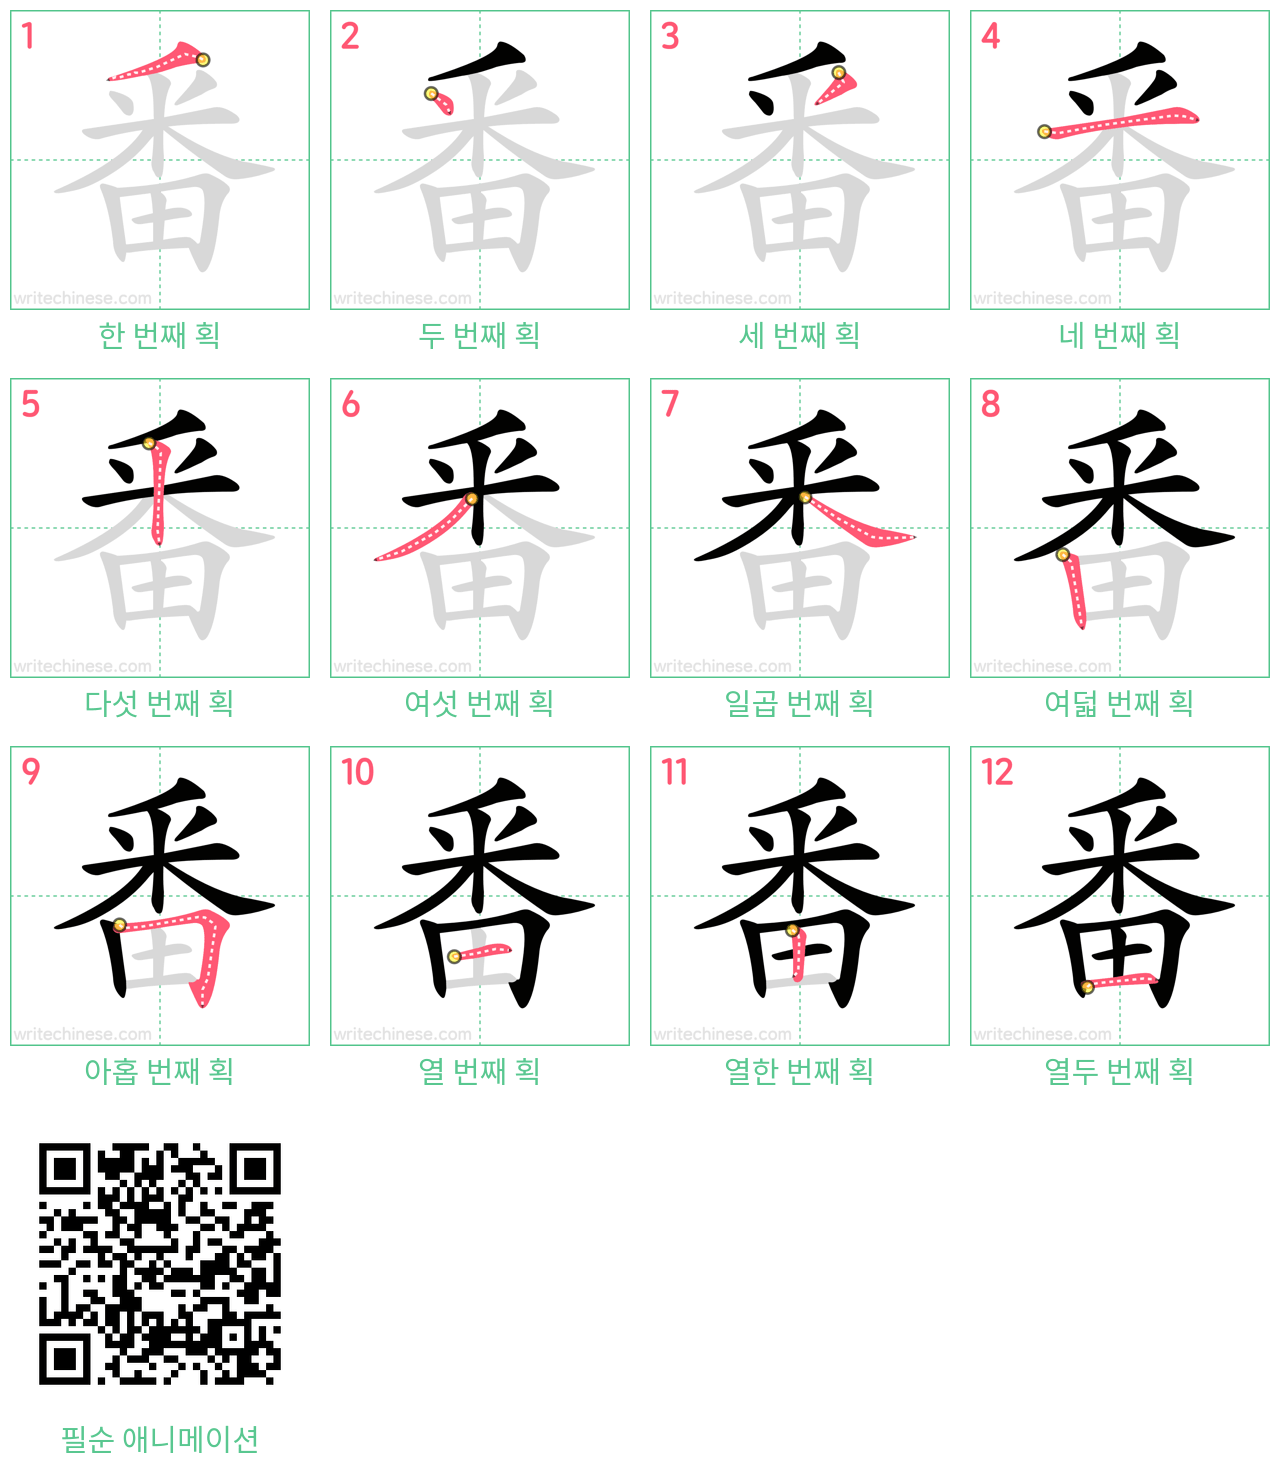 番 step-by-step stroke order diagrams